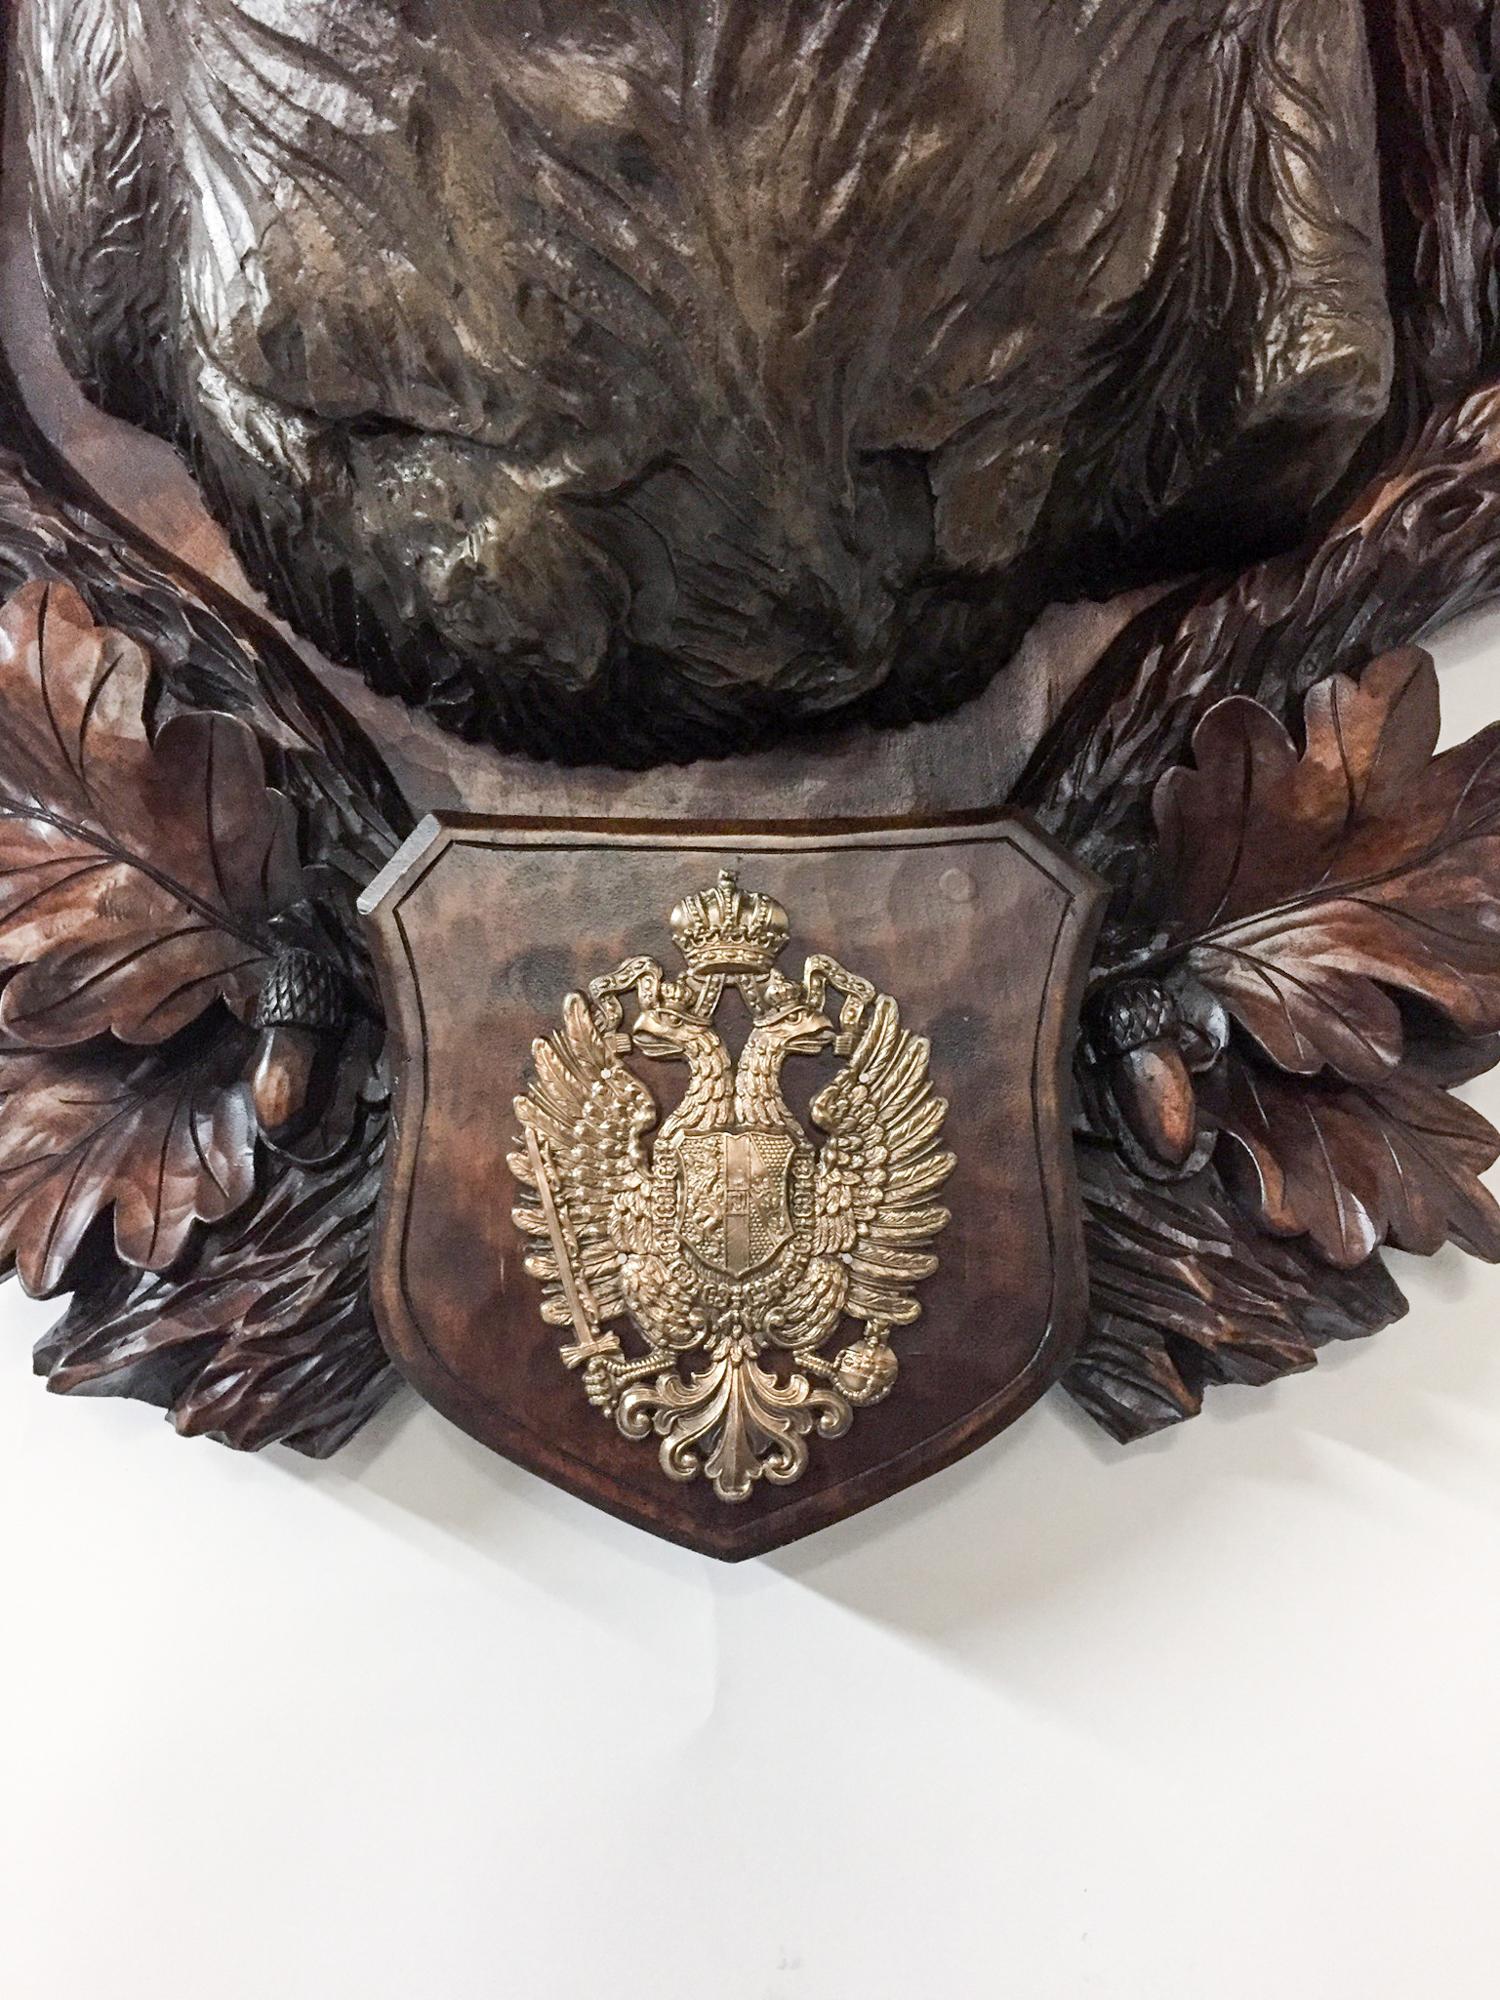 Austrian Antique Habsburg Red Stag Trophy on Bronze Shoulder Mount from Eckartsau Castle